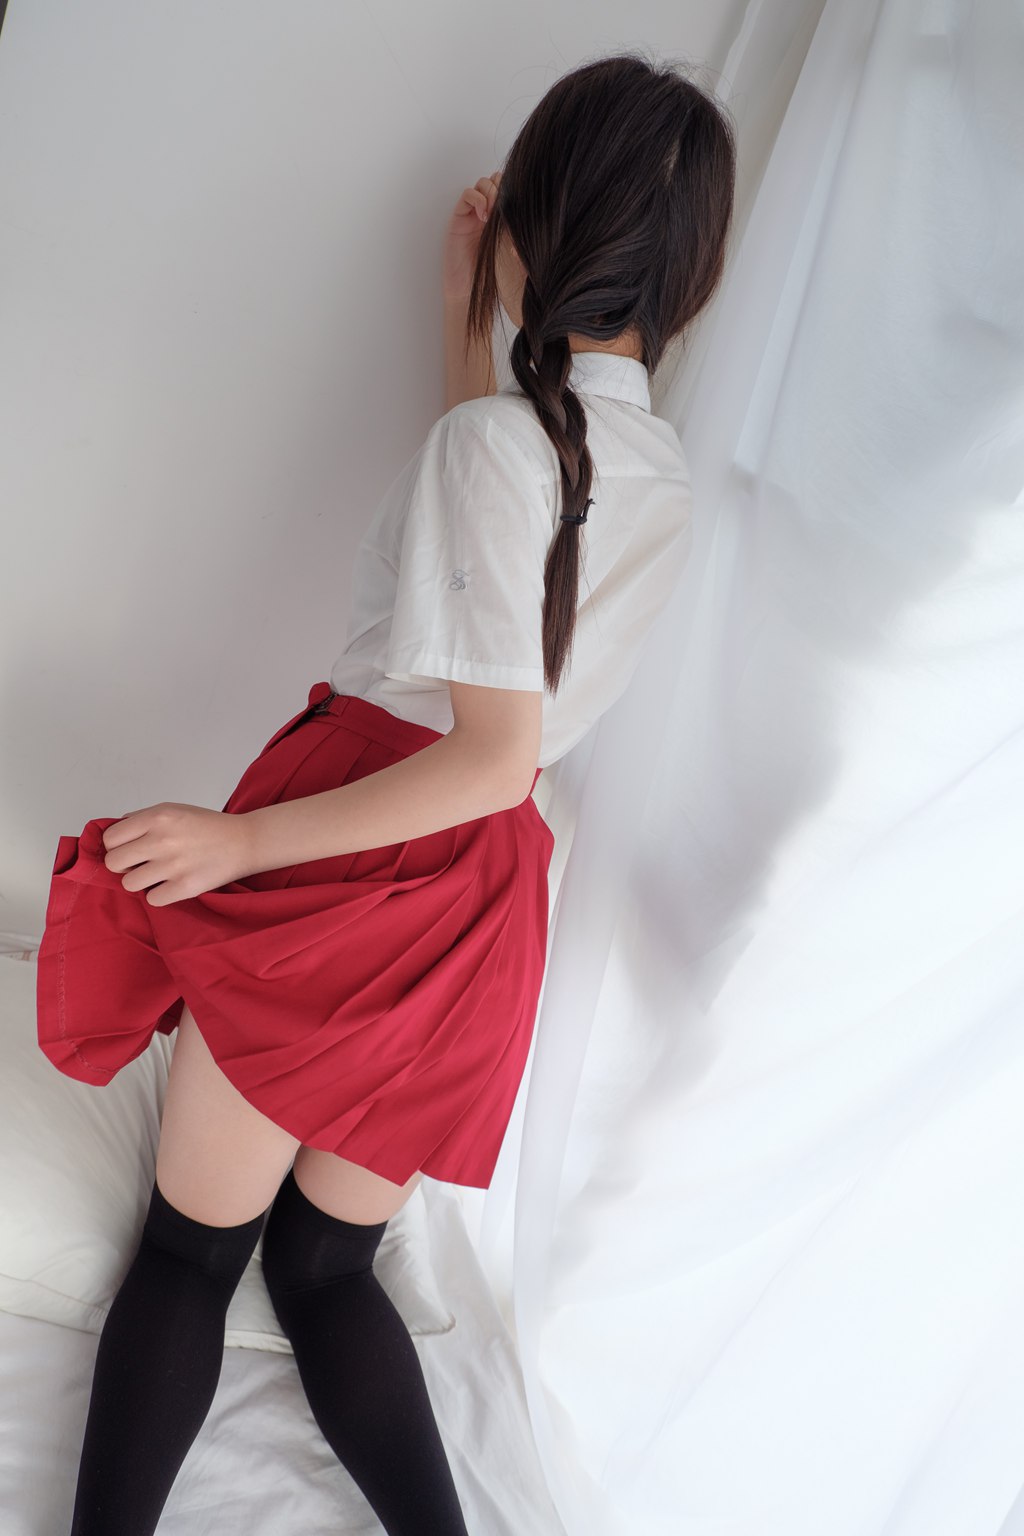 罗利丝控-喵写真 Vol.013 摇摆的小红裙